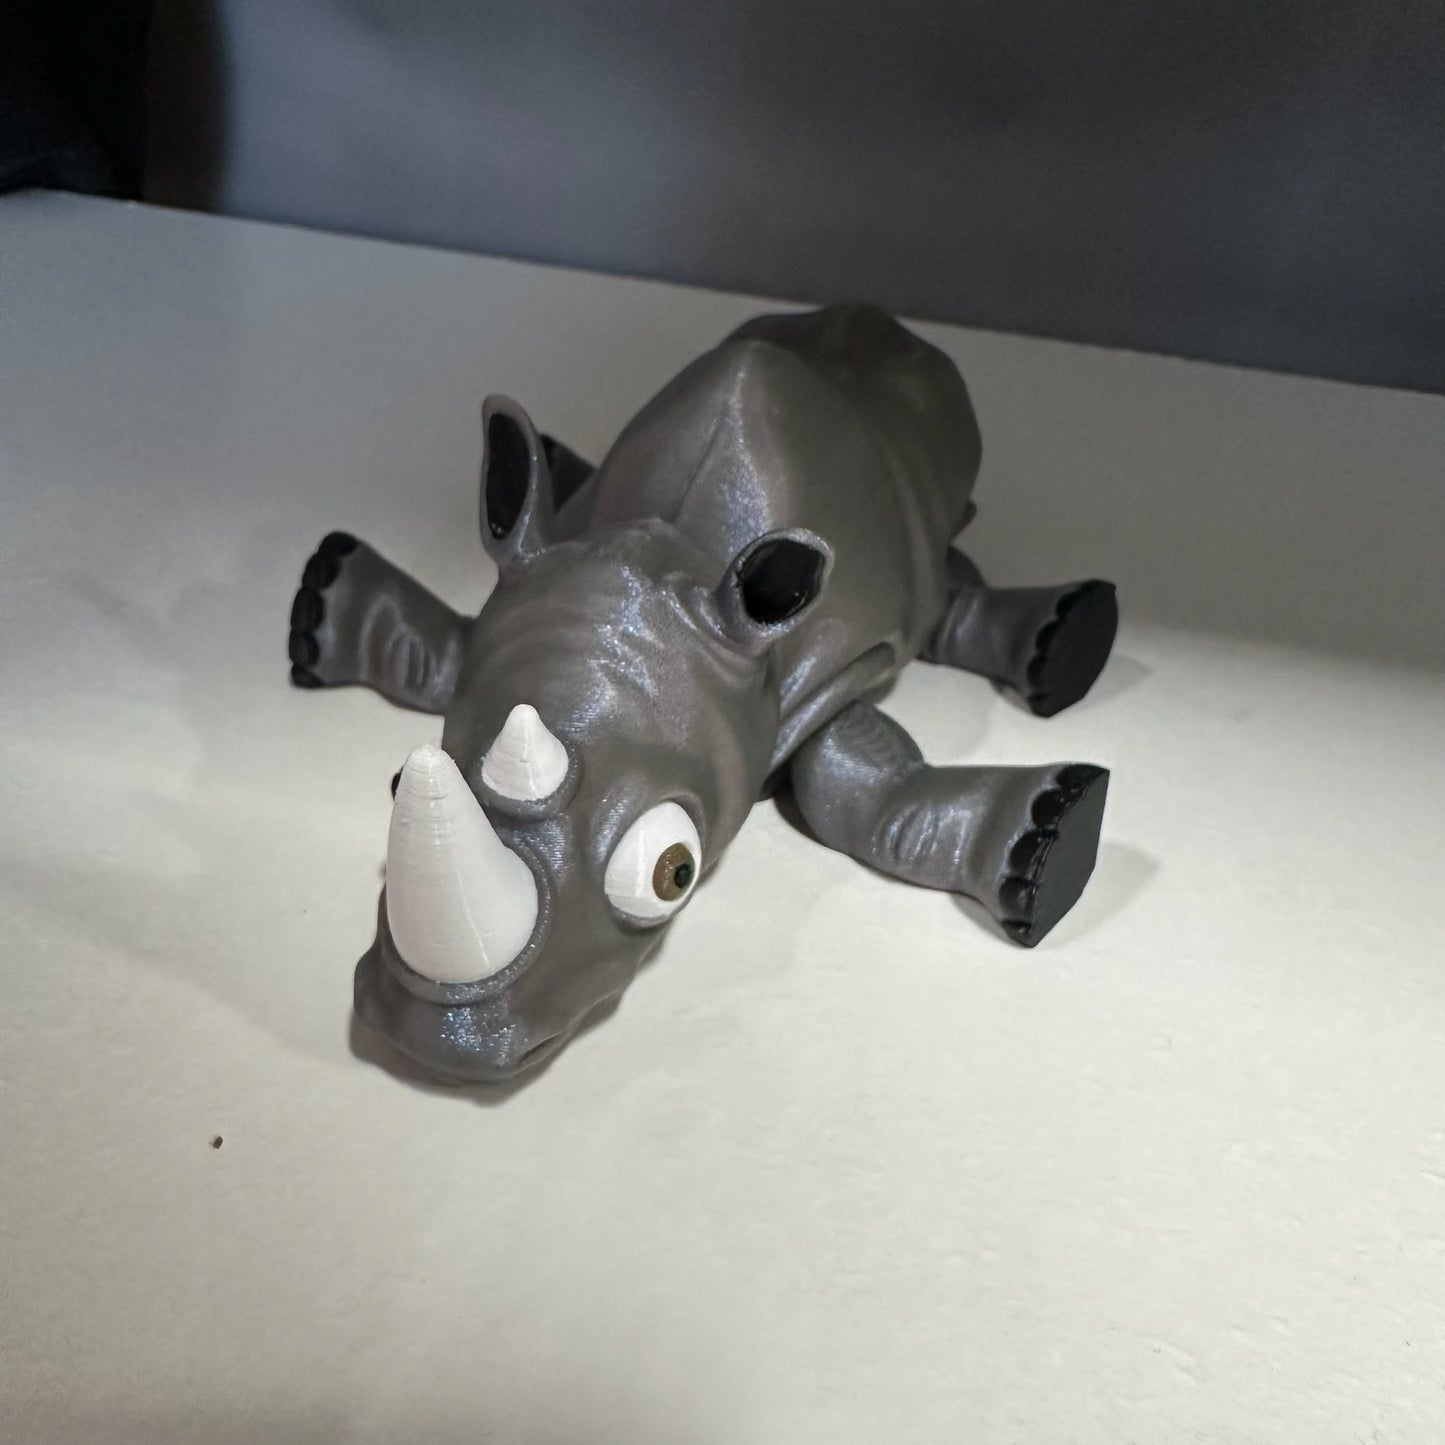 3D Printed Rhinoceros